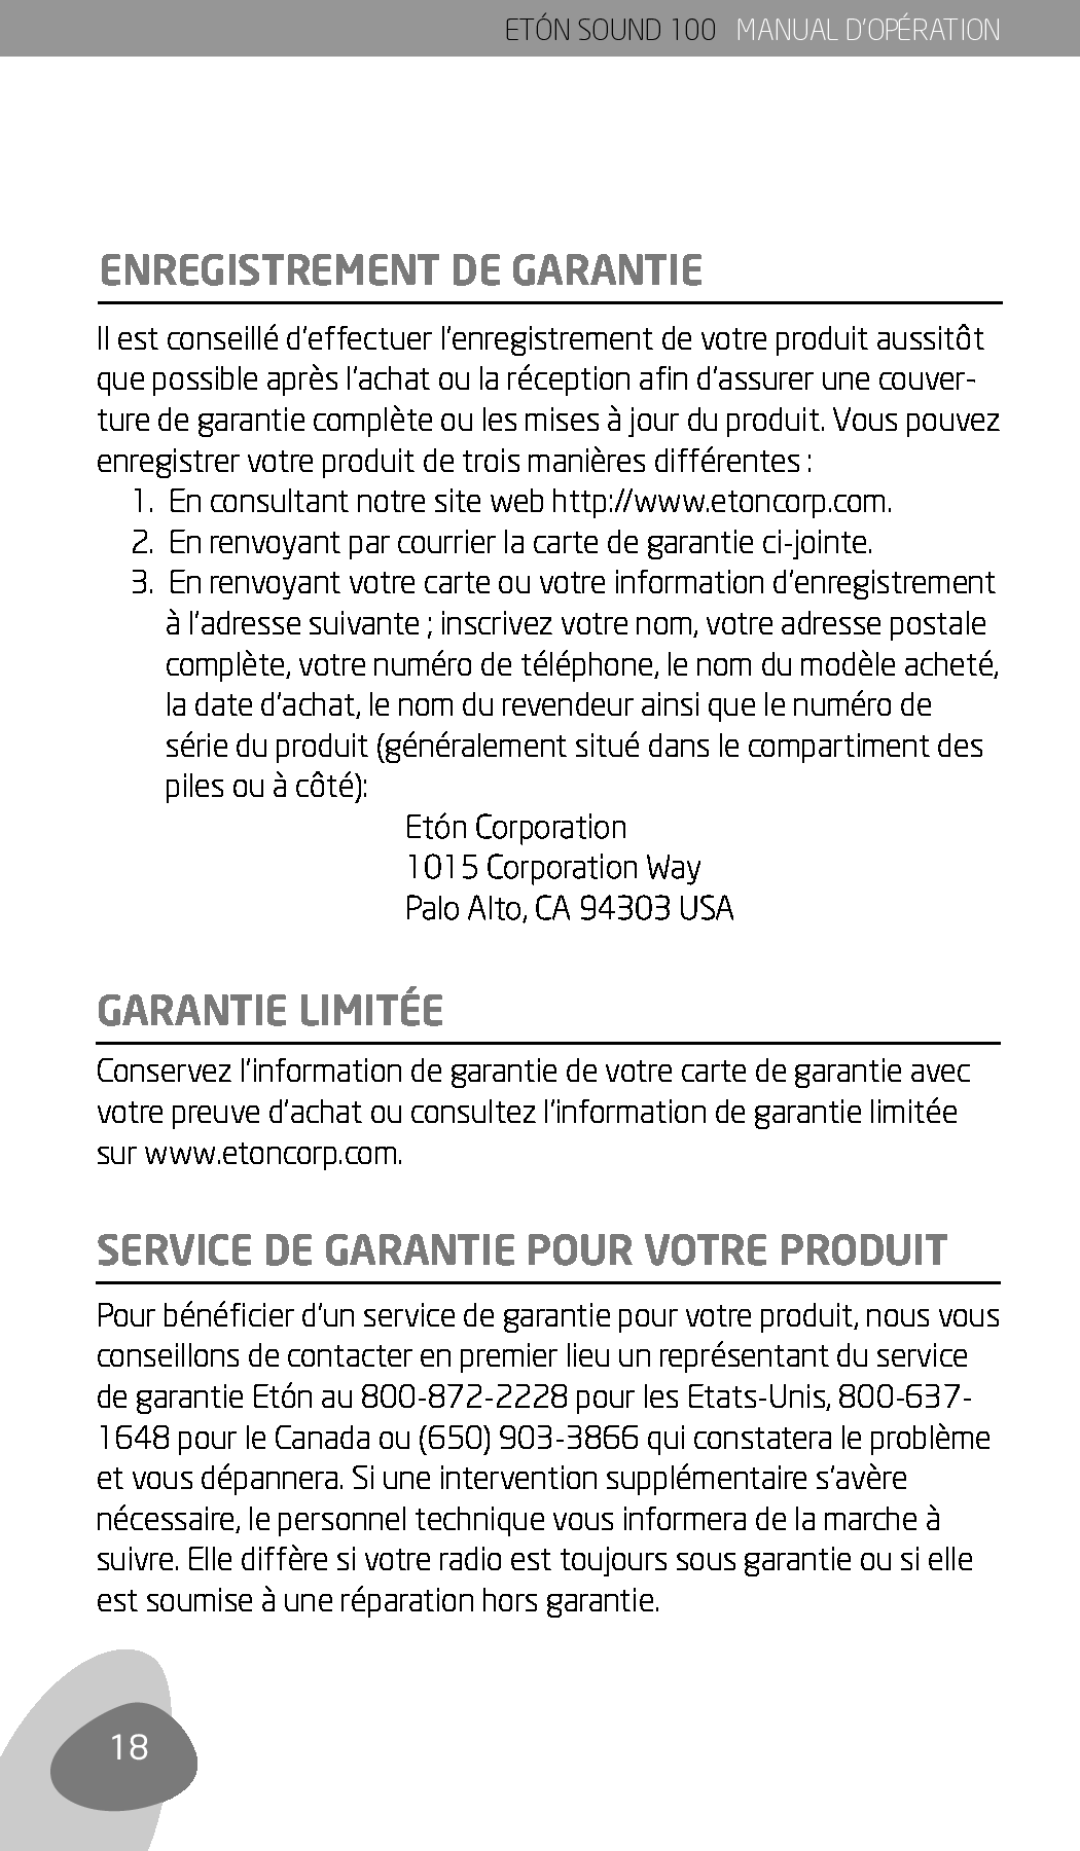 Eton Sound 100 owner manual Enregistrement De Garantie, Garantie Limitée, Service De Garantie Pour Votre Produit 